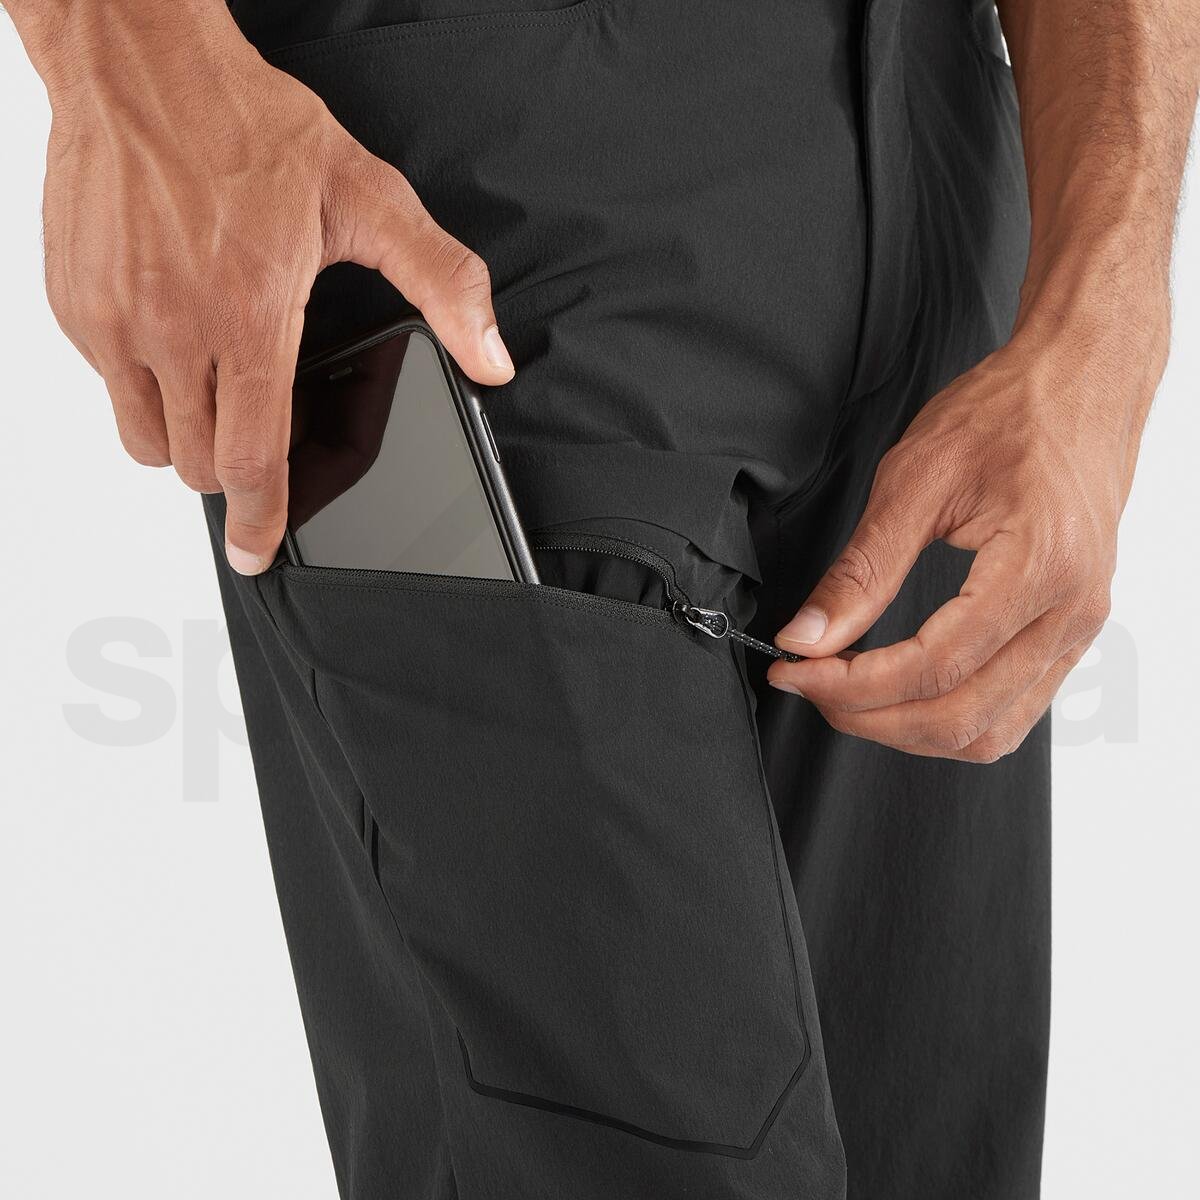 Kalhoty Salomon WAYFARER PANTS M - černá (prodloužená délka)